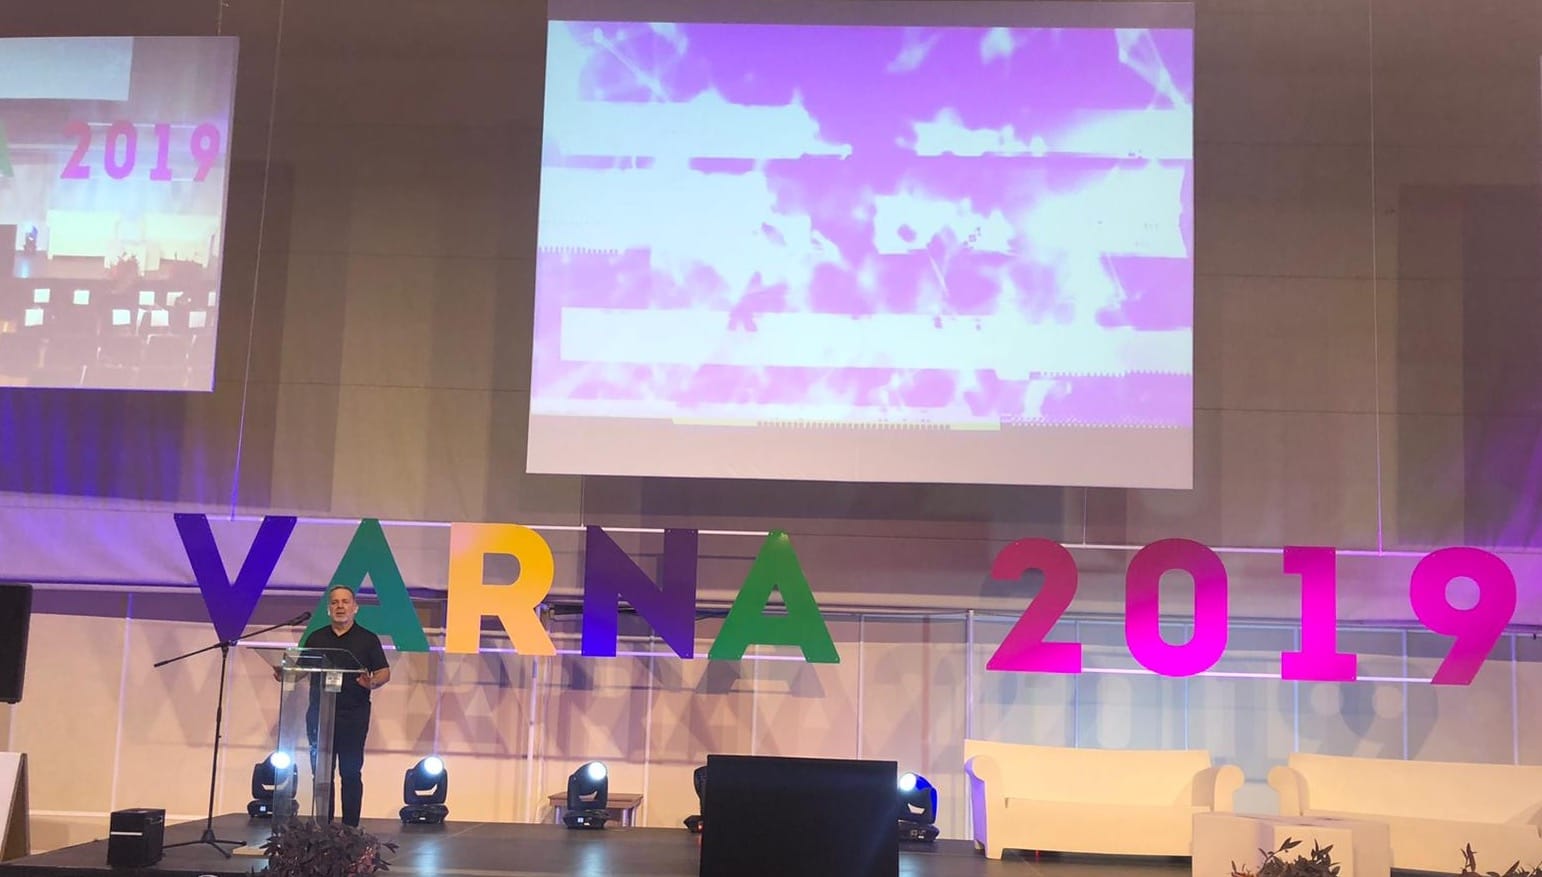 Erol User at Innowave Summit Varna 2019